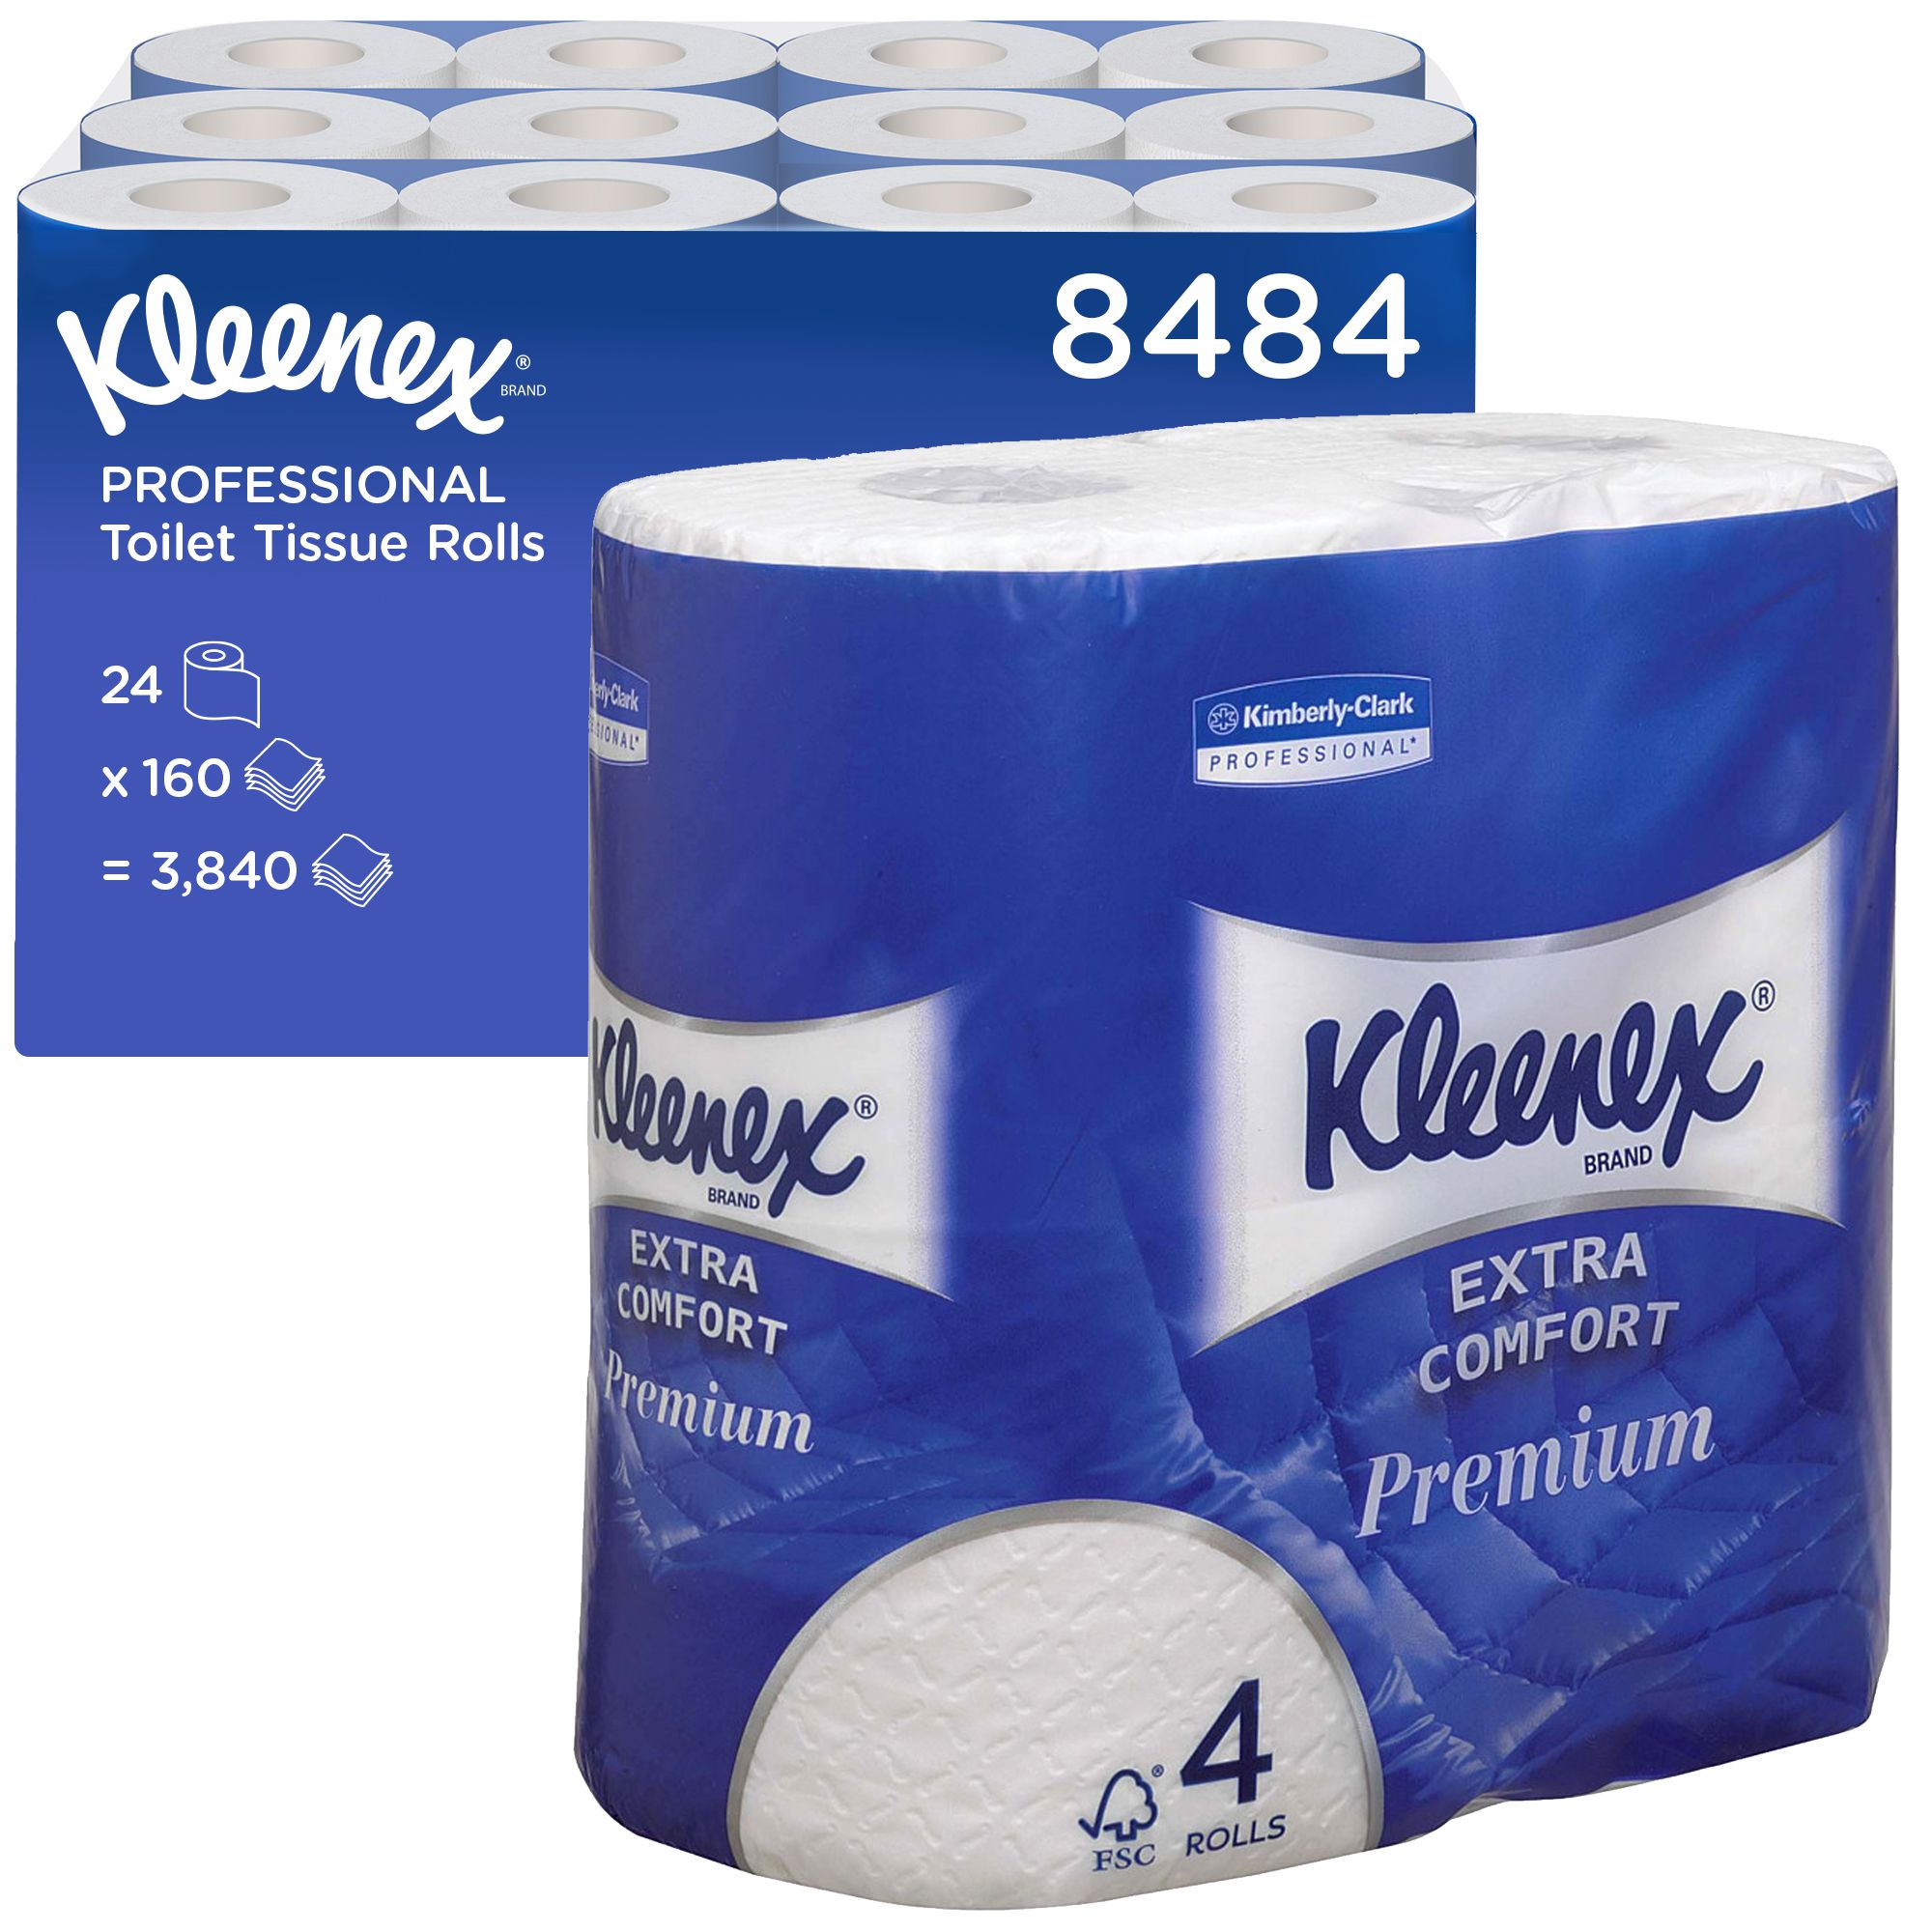 8484 Туалетная бумага Kleenex Premium Extra Comfort в стандартных рулонах четырехслойная, 24 рулона по 19,2 метра